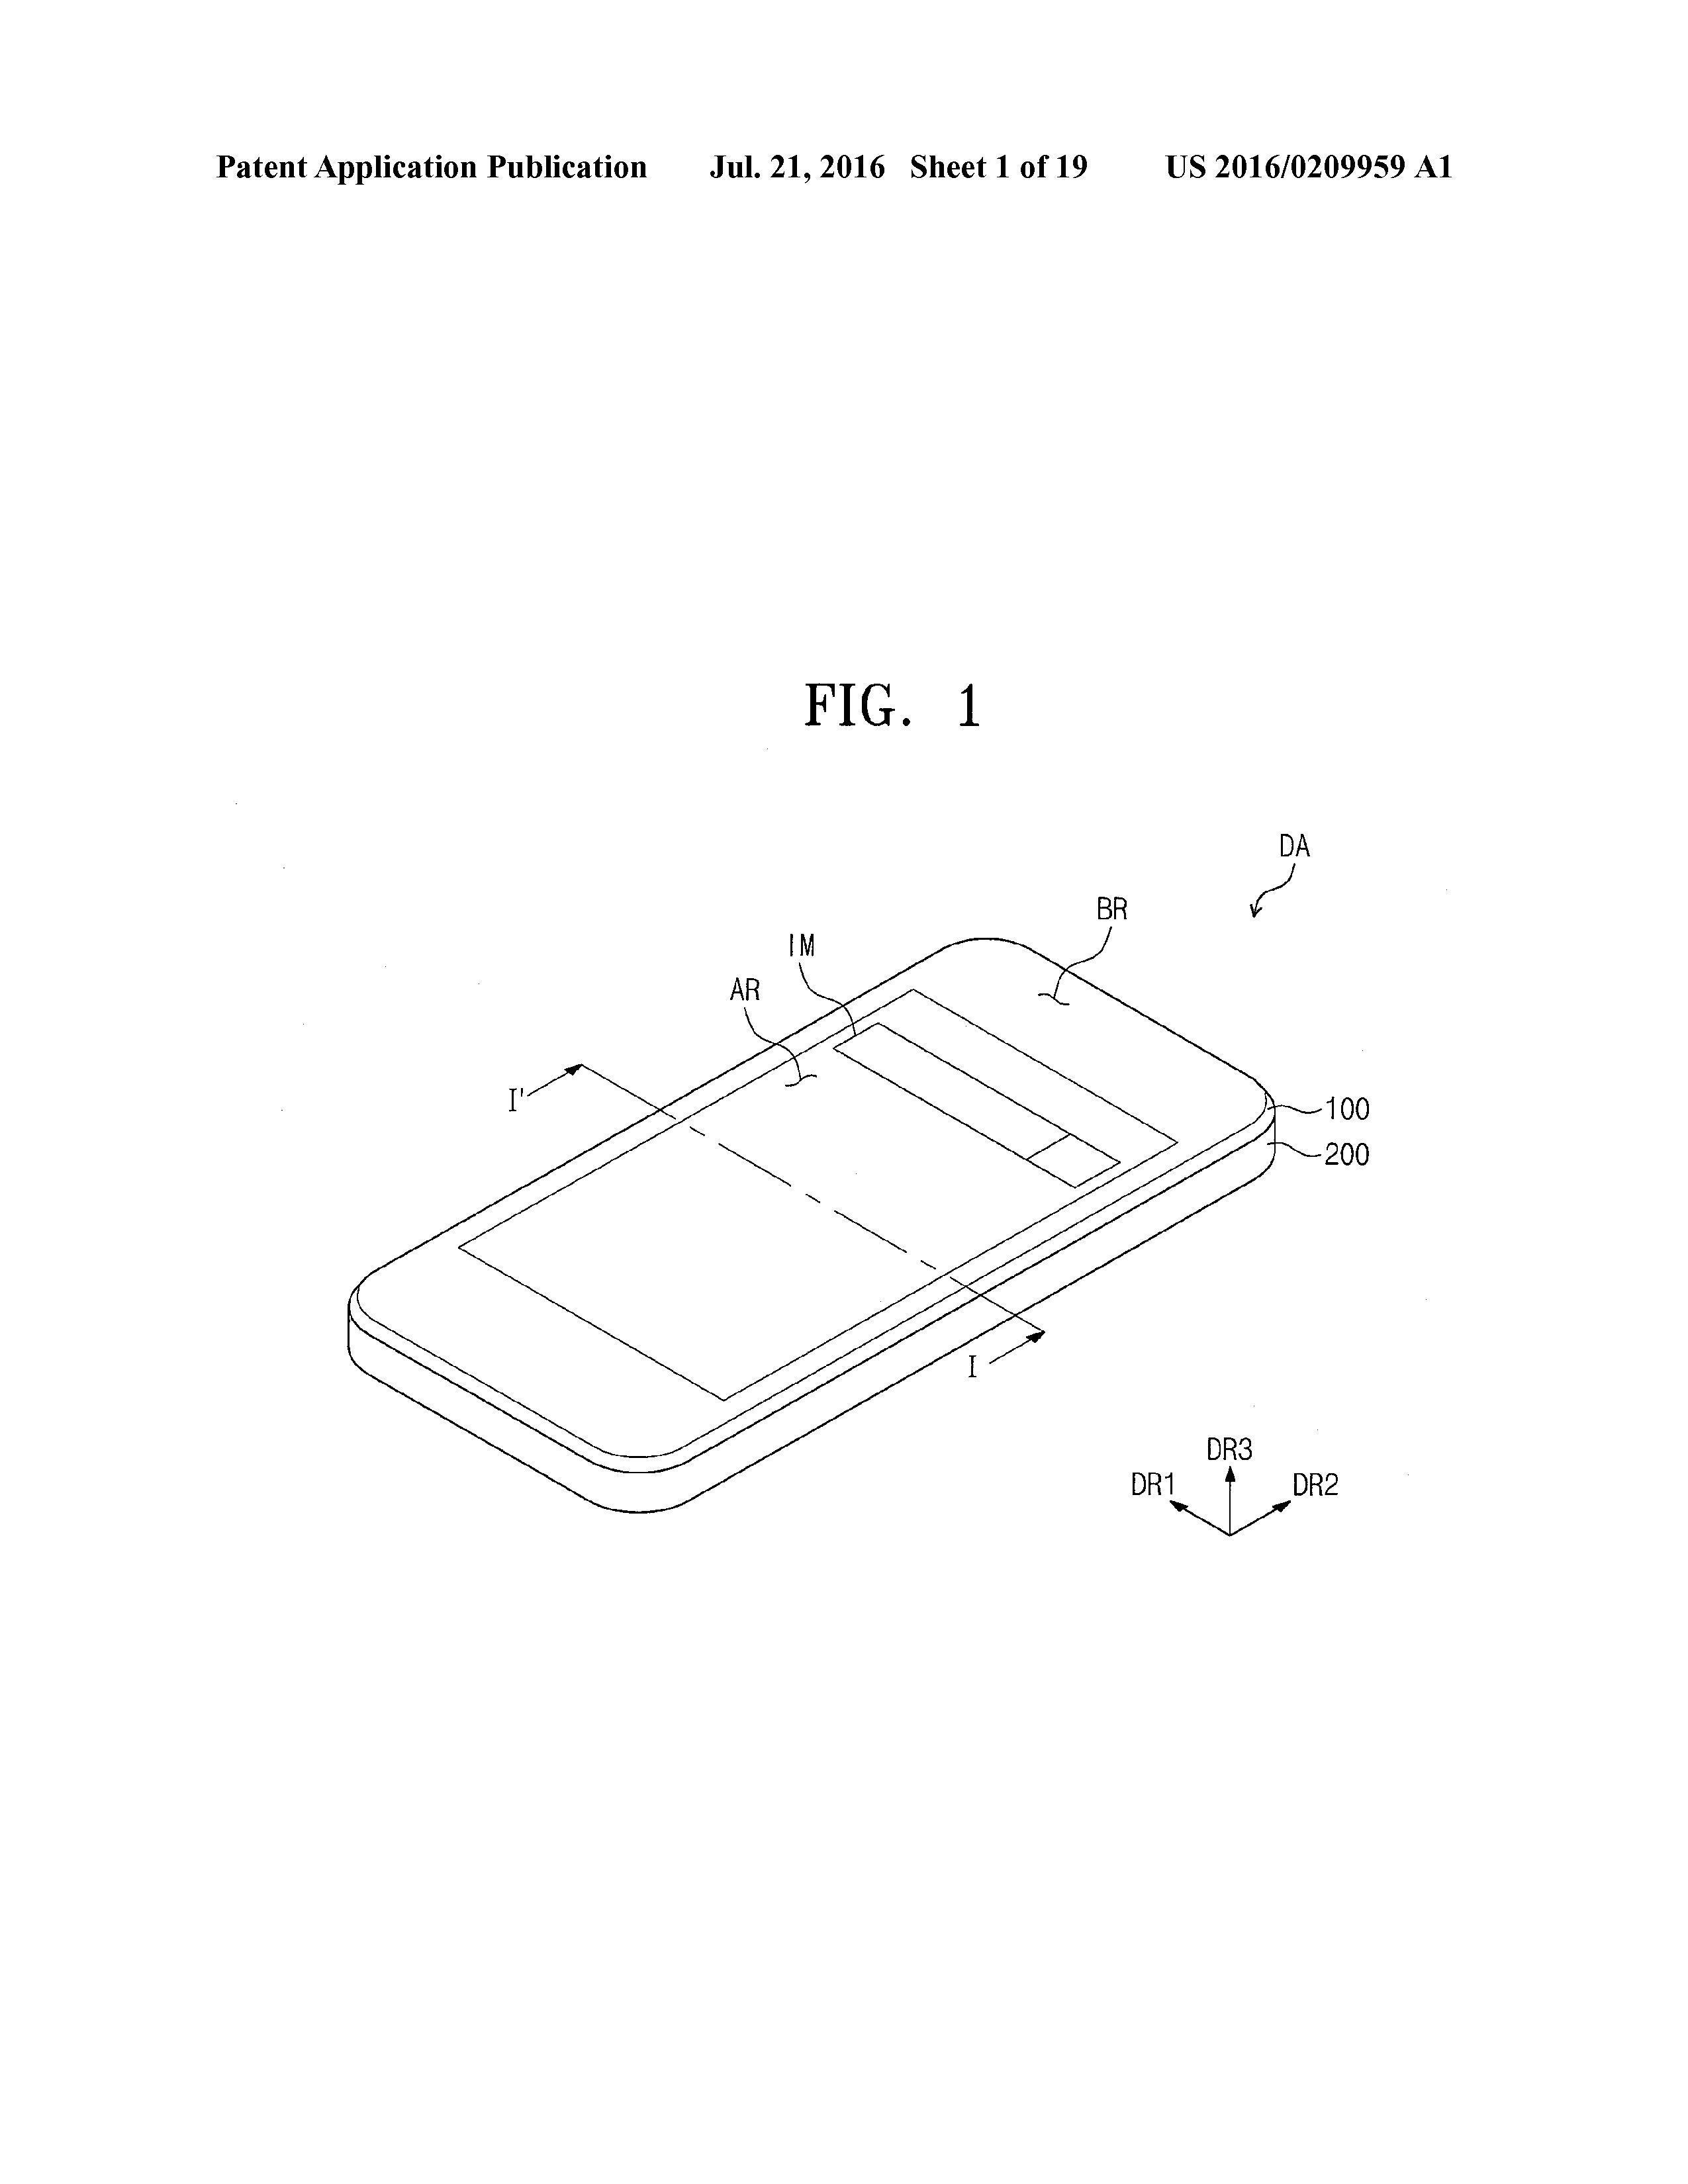 Samsung har også tatt patent på en todelt skjerm nylig. Bildet er hentet fra patentdokumentet.